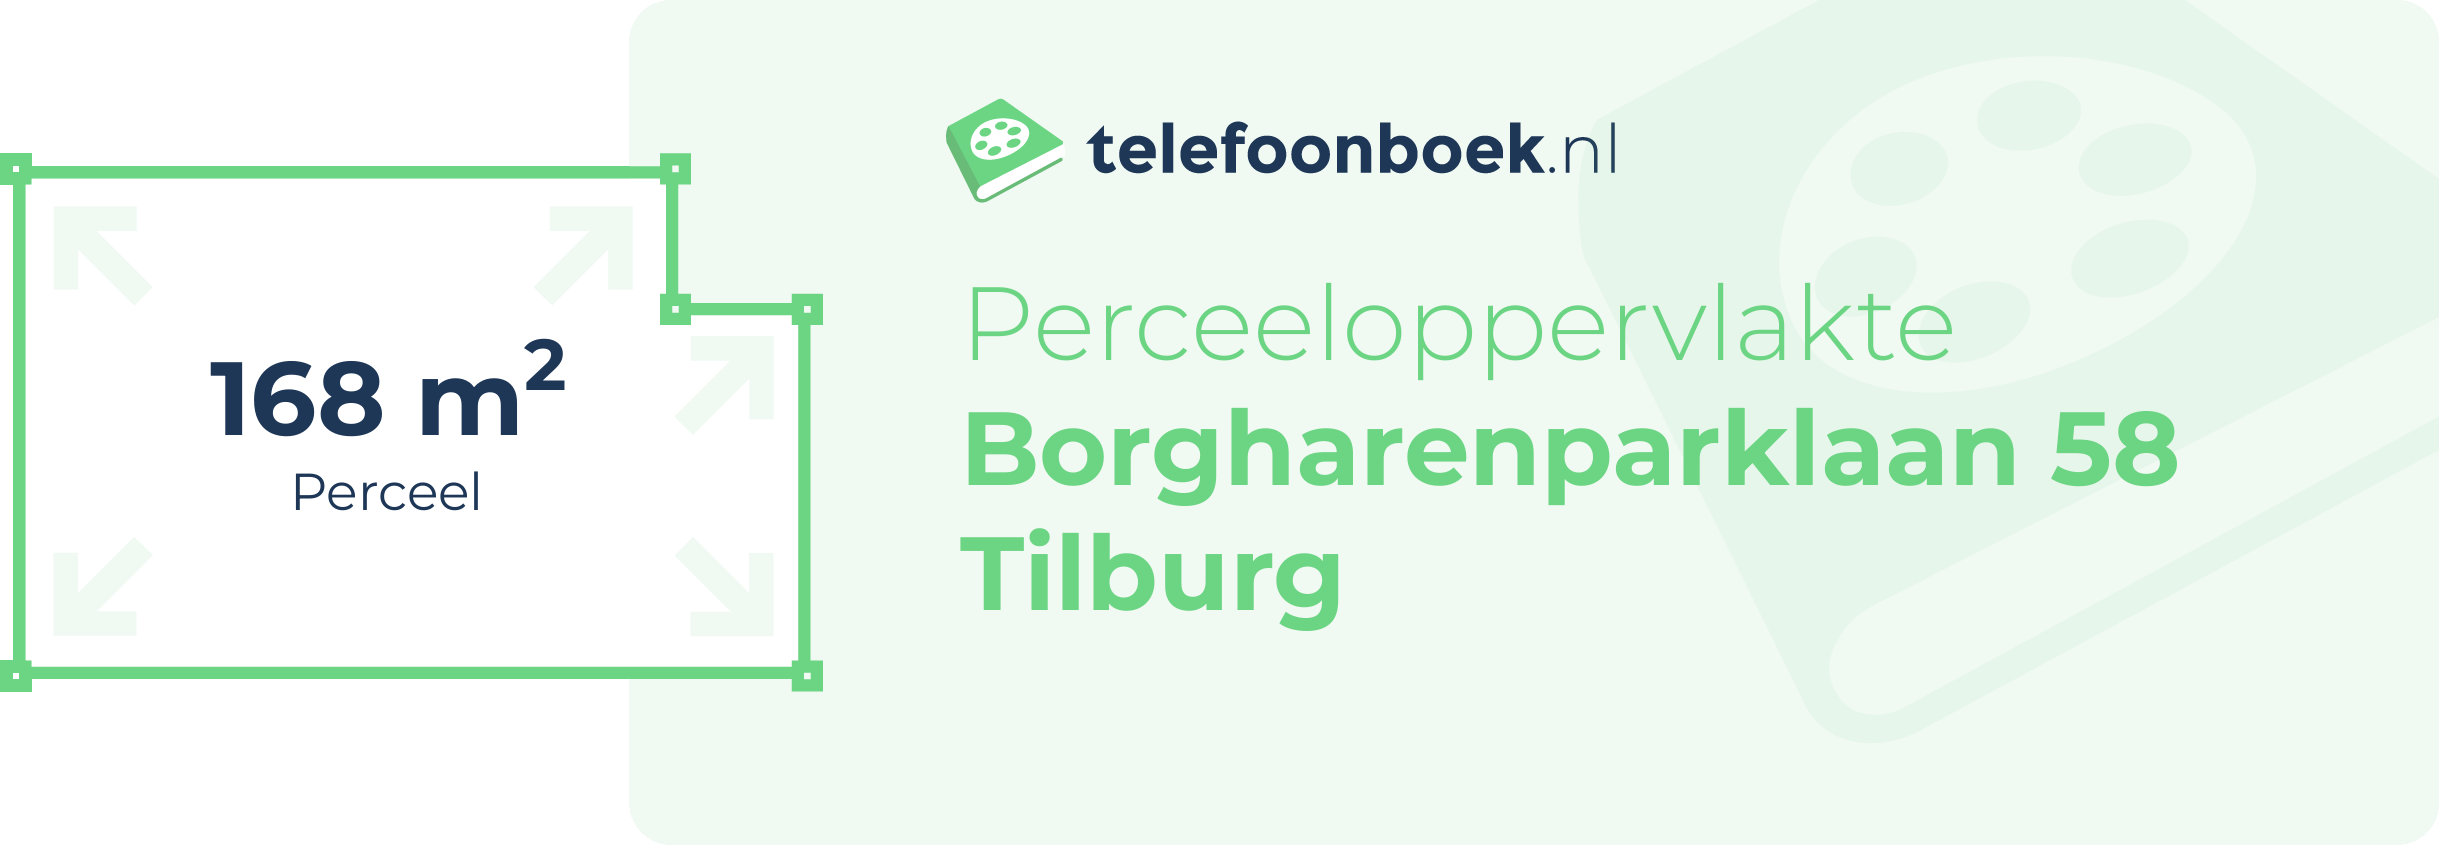 Perceeloppervlakte Borgharenparklaan 58 Tilburg